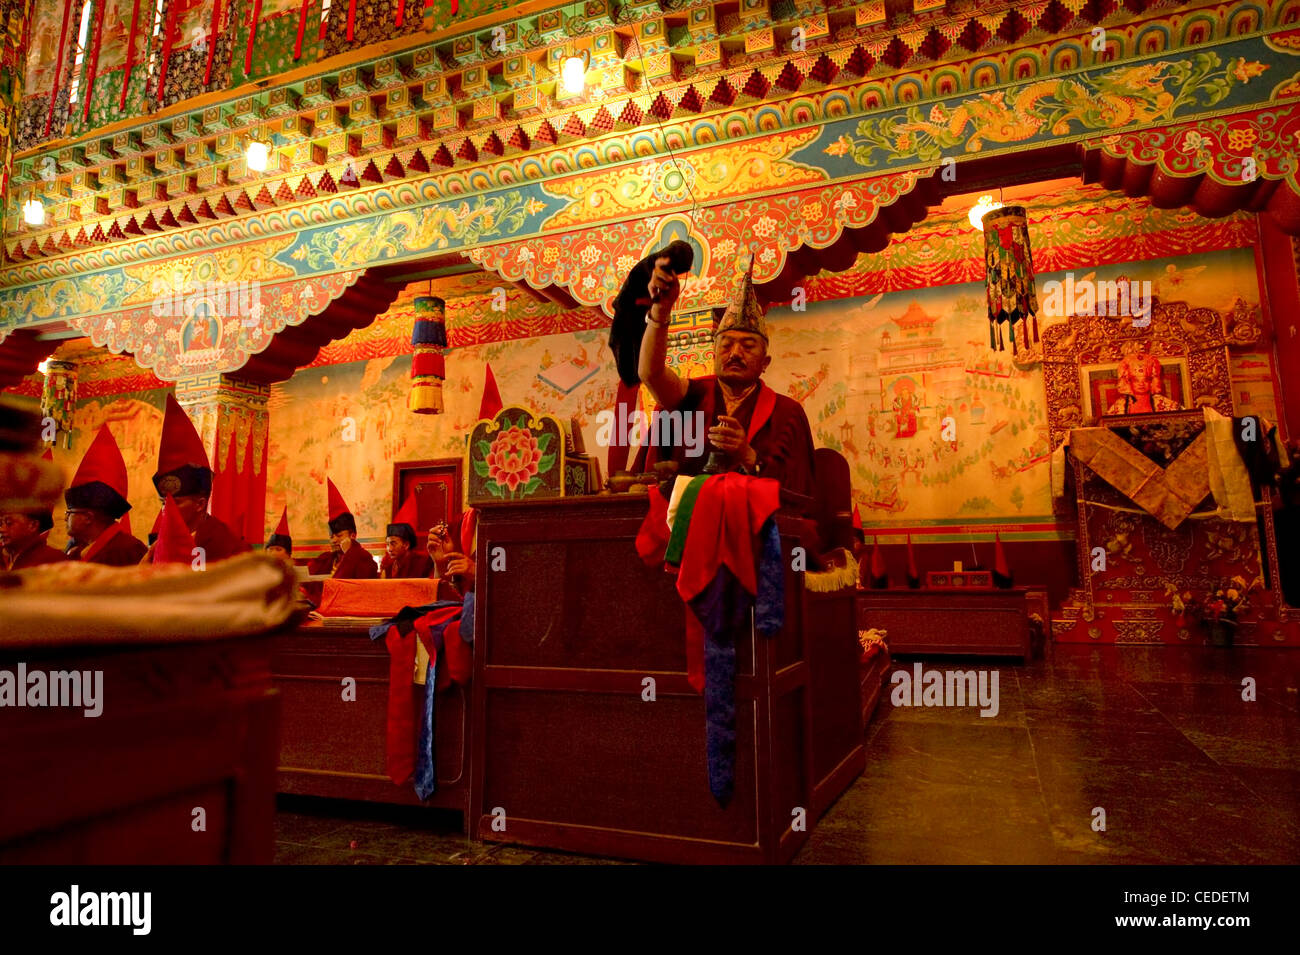 Buddhist Monastery in Sikkim India Stock Photo